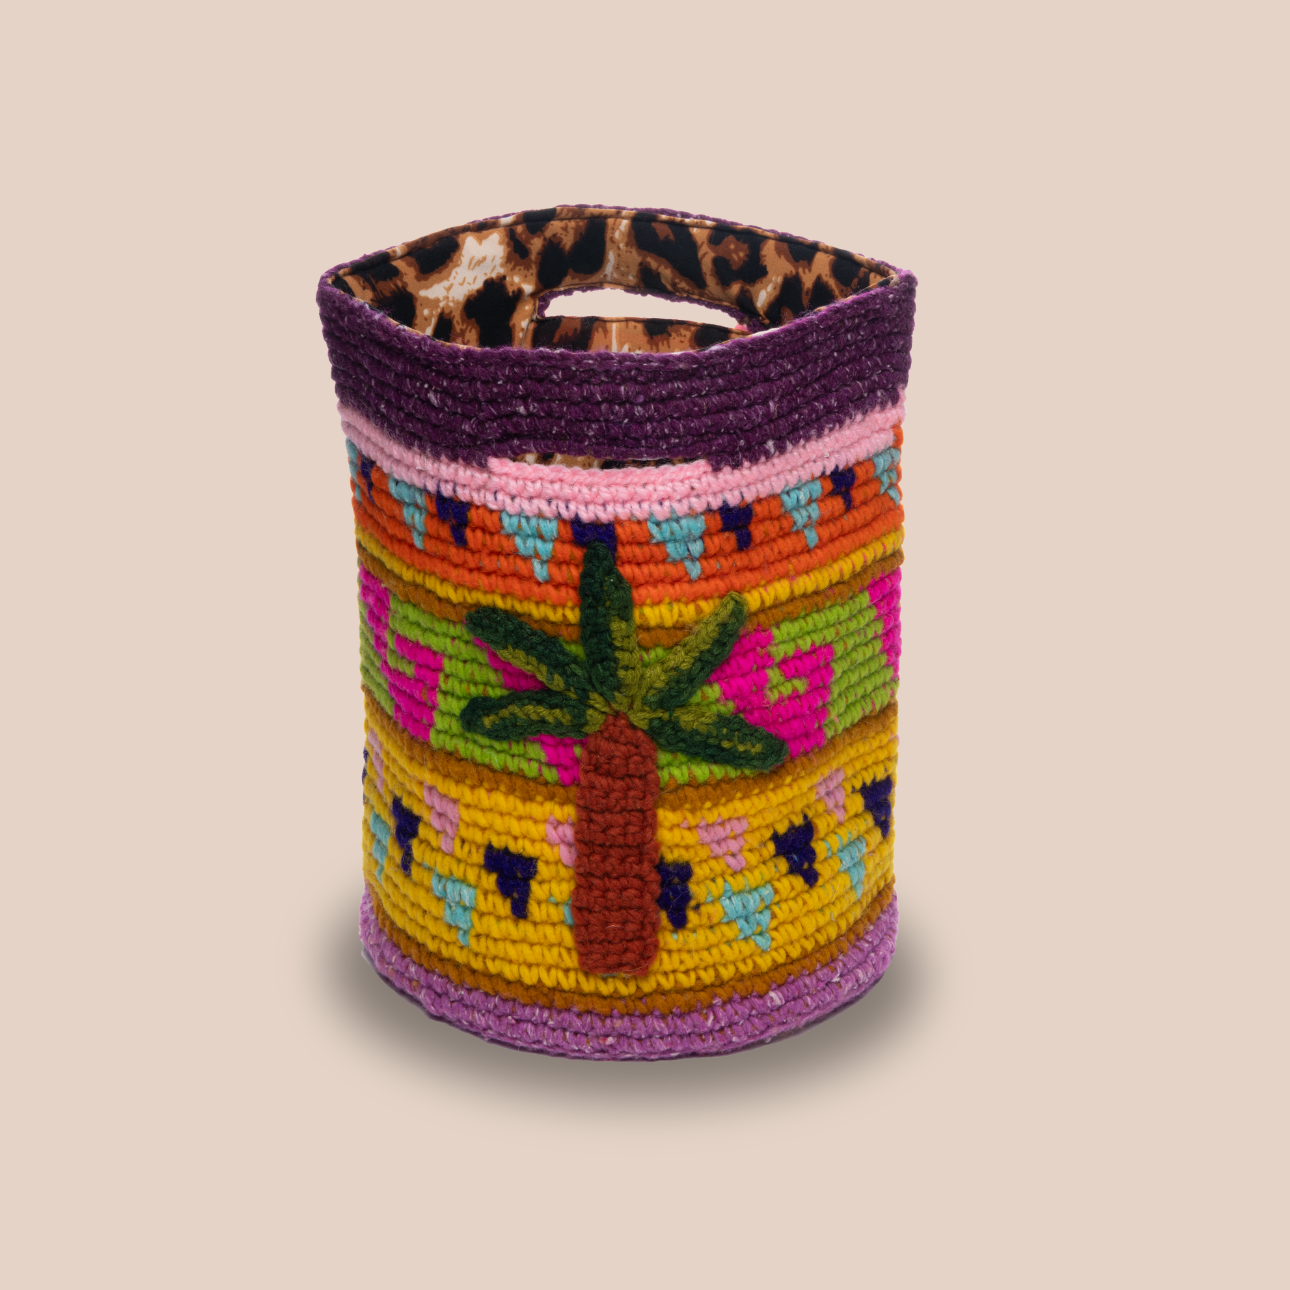 Image d'un sac aux motifs palmiers avec doublure léopard, sac en laine crochetée arborant des couleurs vives et audacieuses